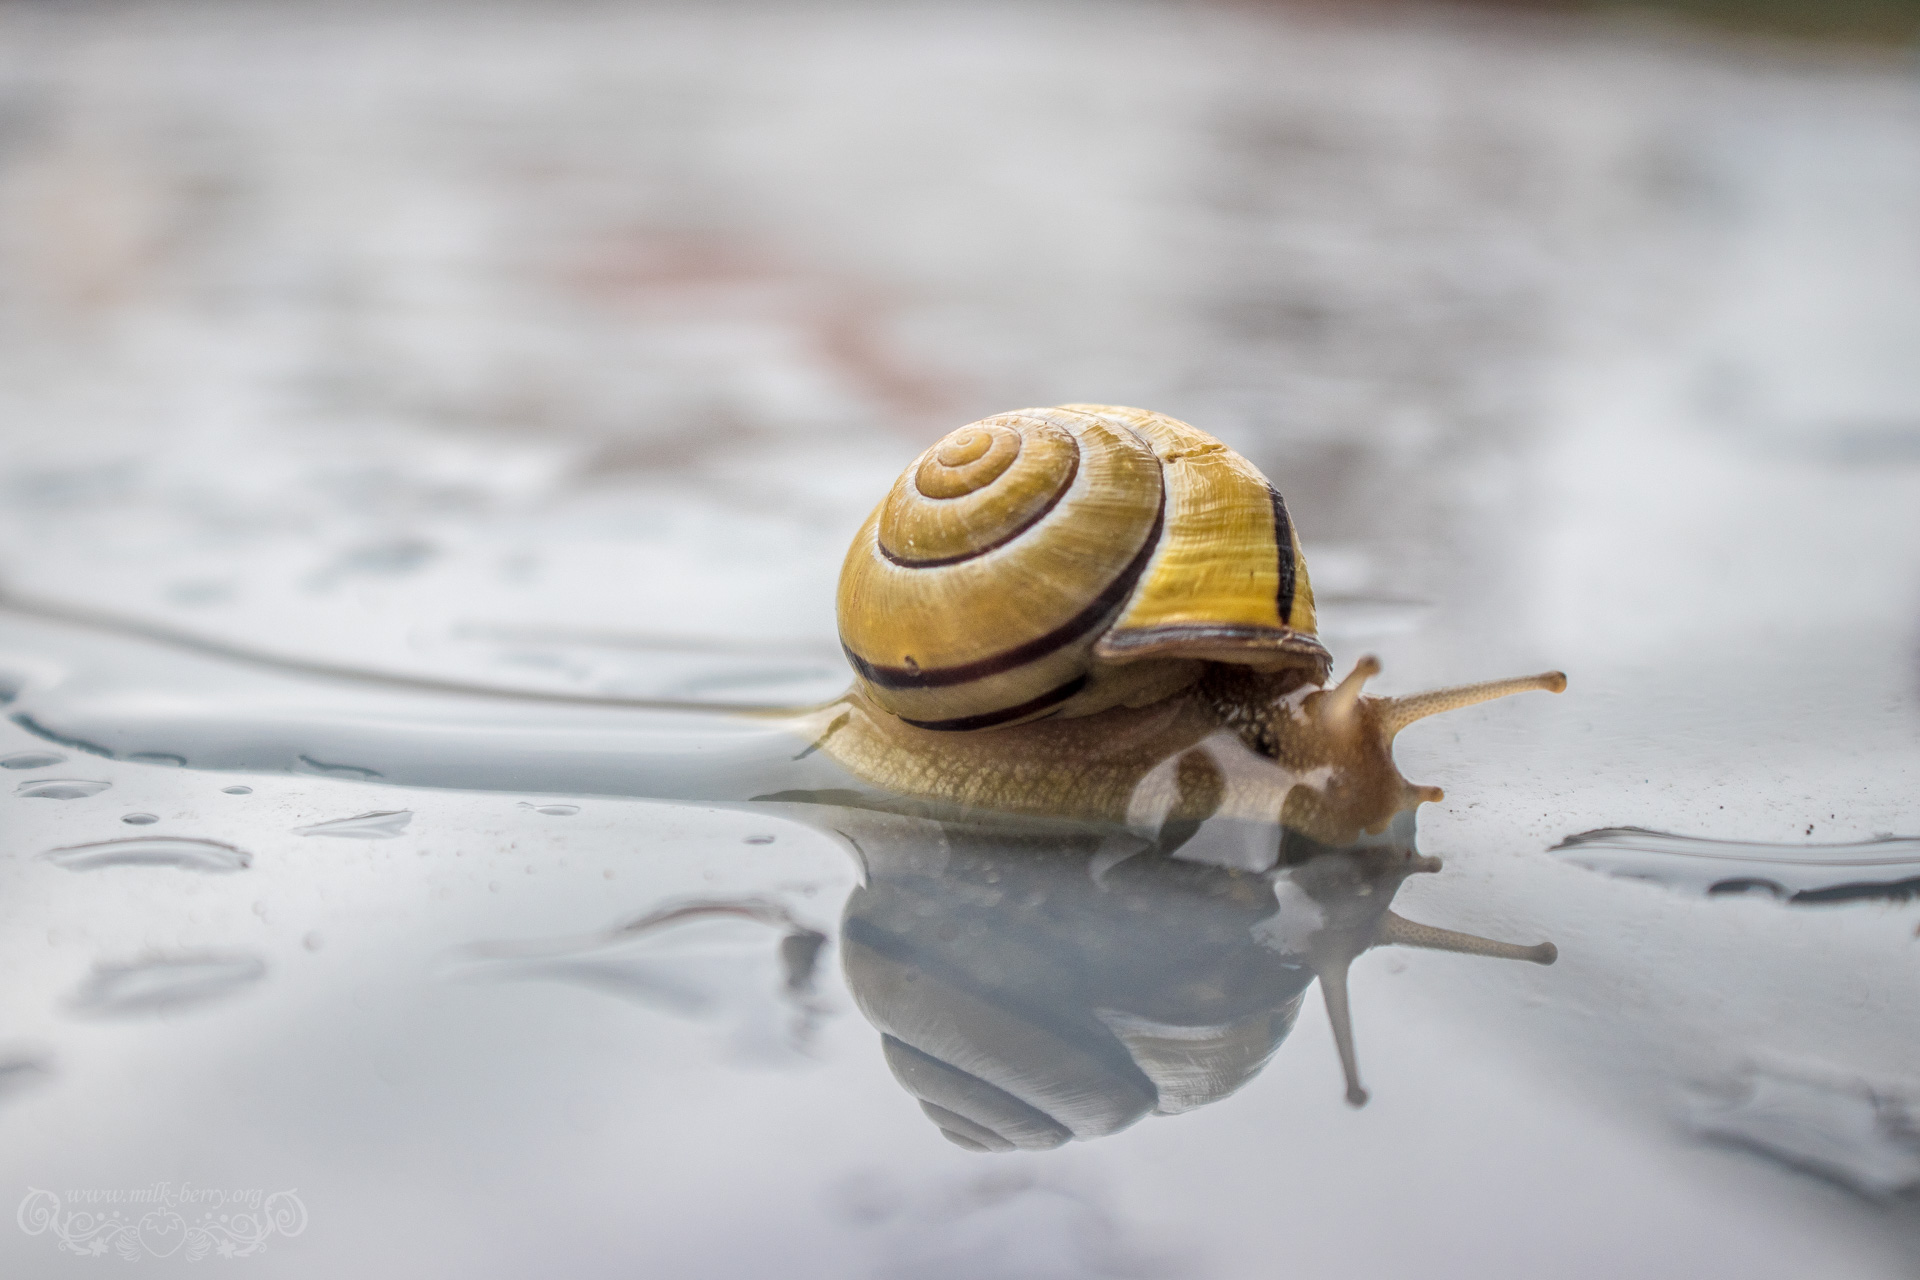 snail09